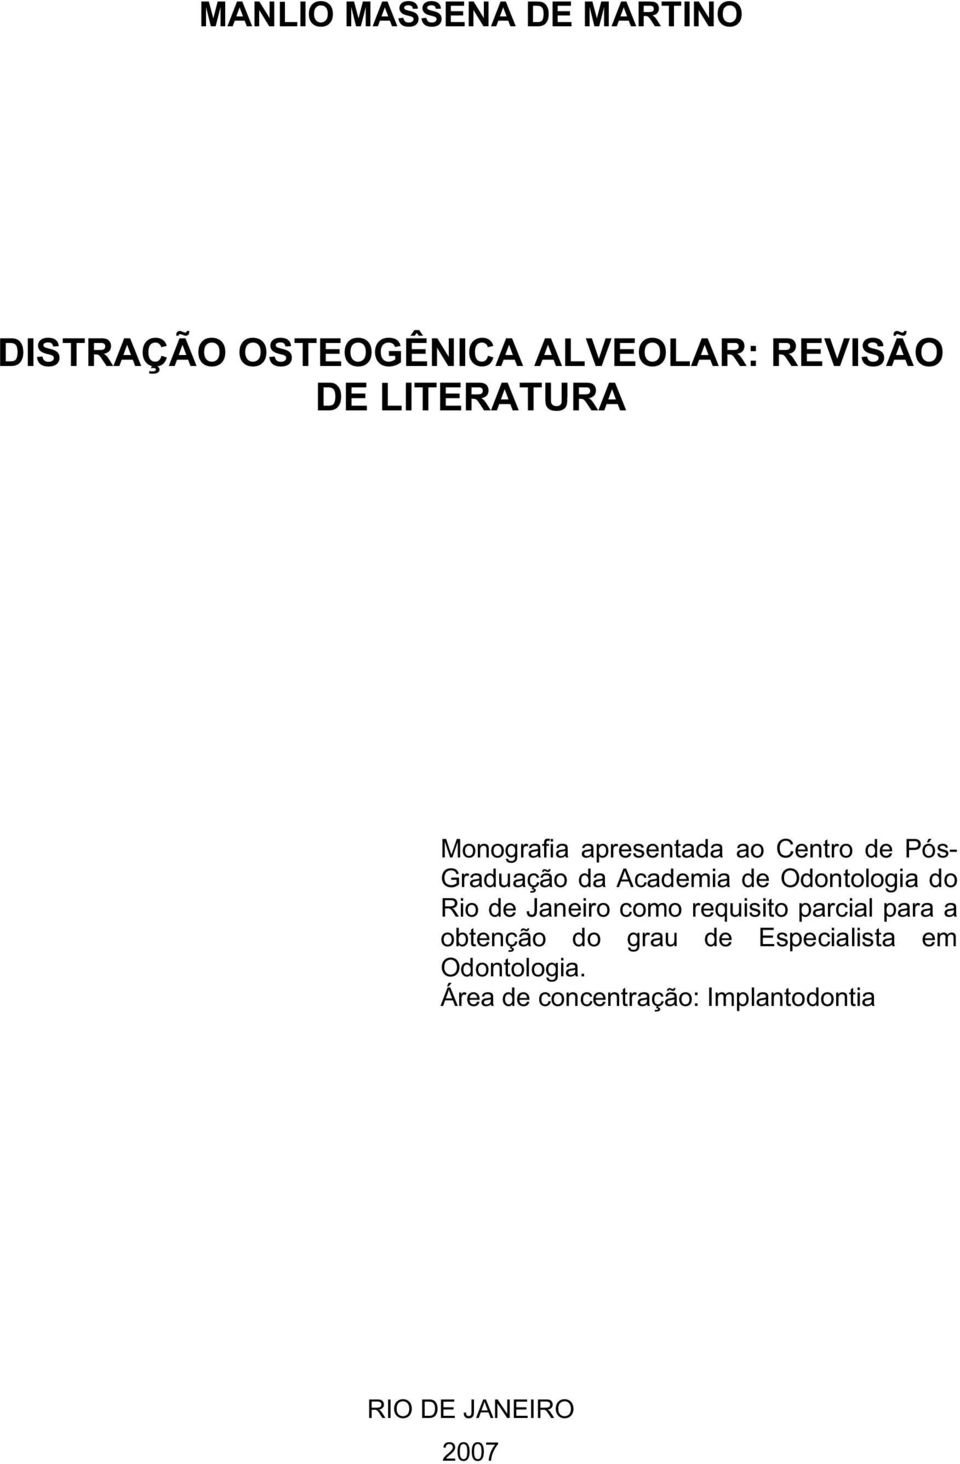 Odontologia do Rio de Janeiro como requisito parcial para a obtenção do grau